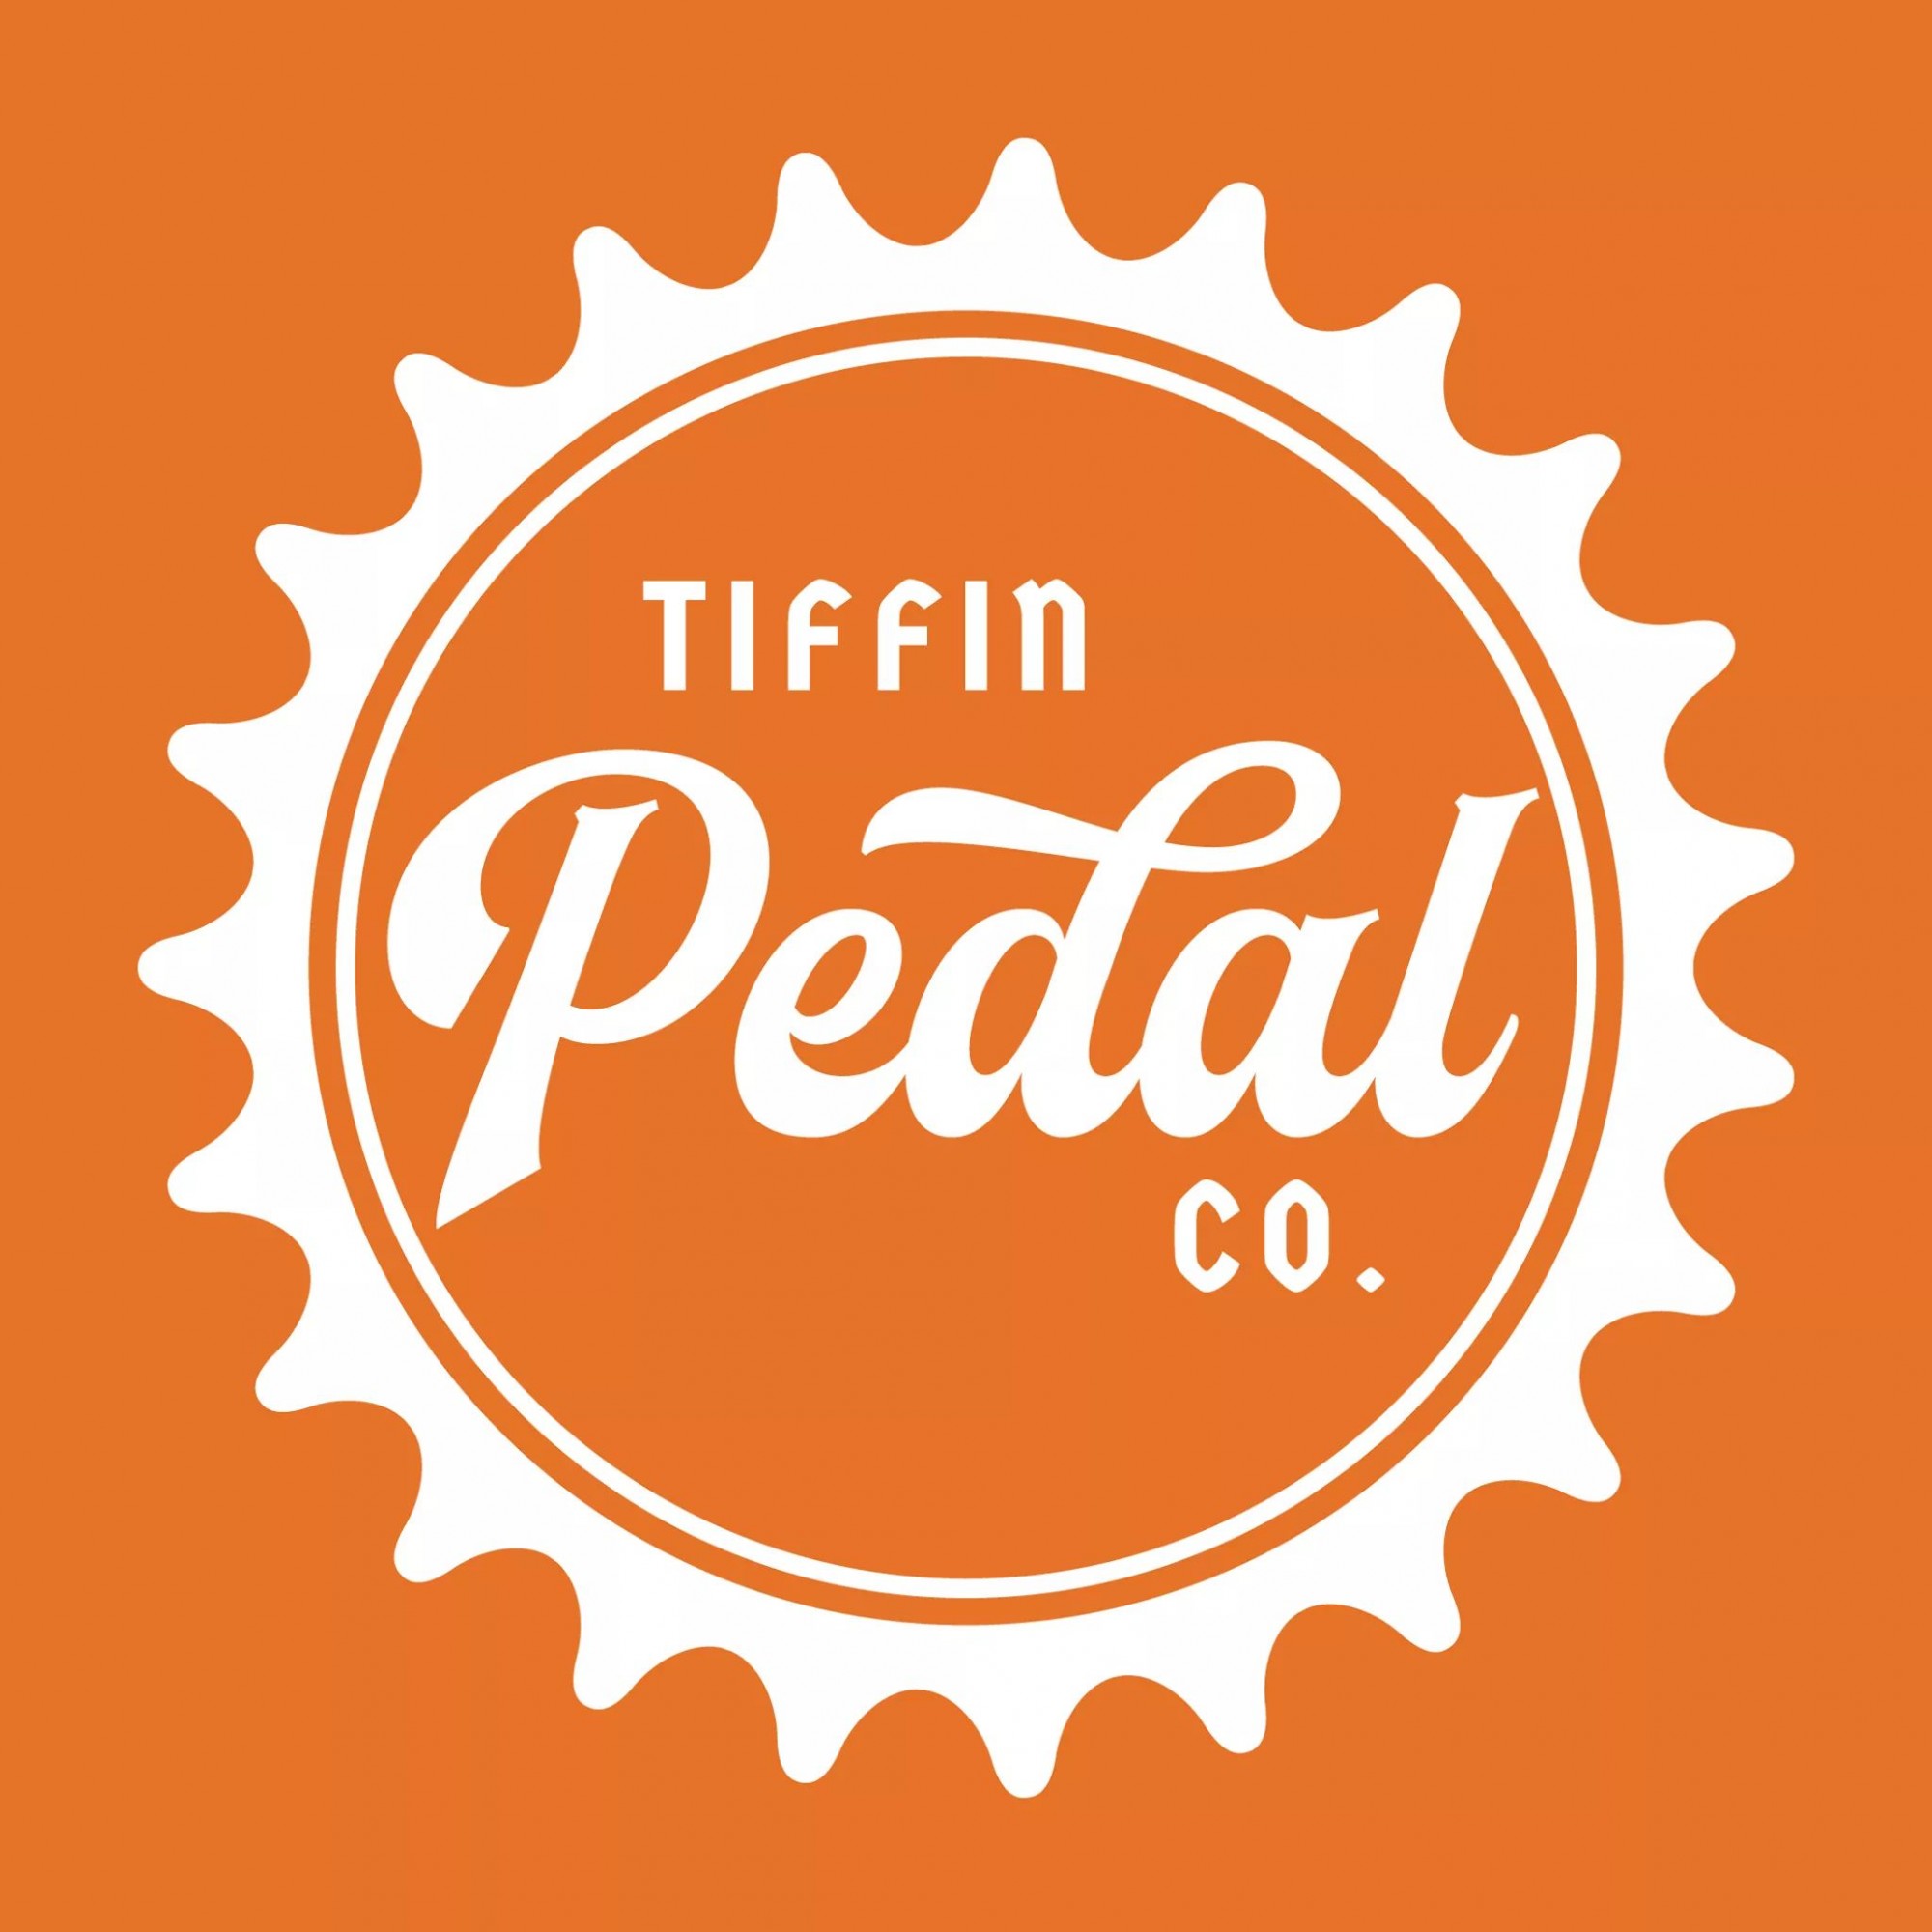 Tiffin Pedal Company